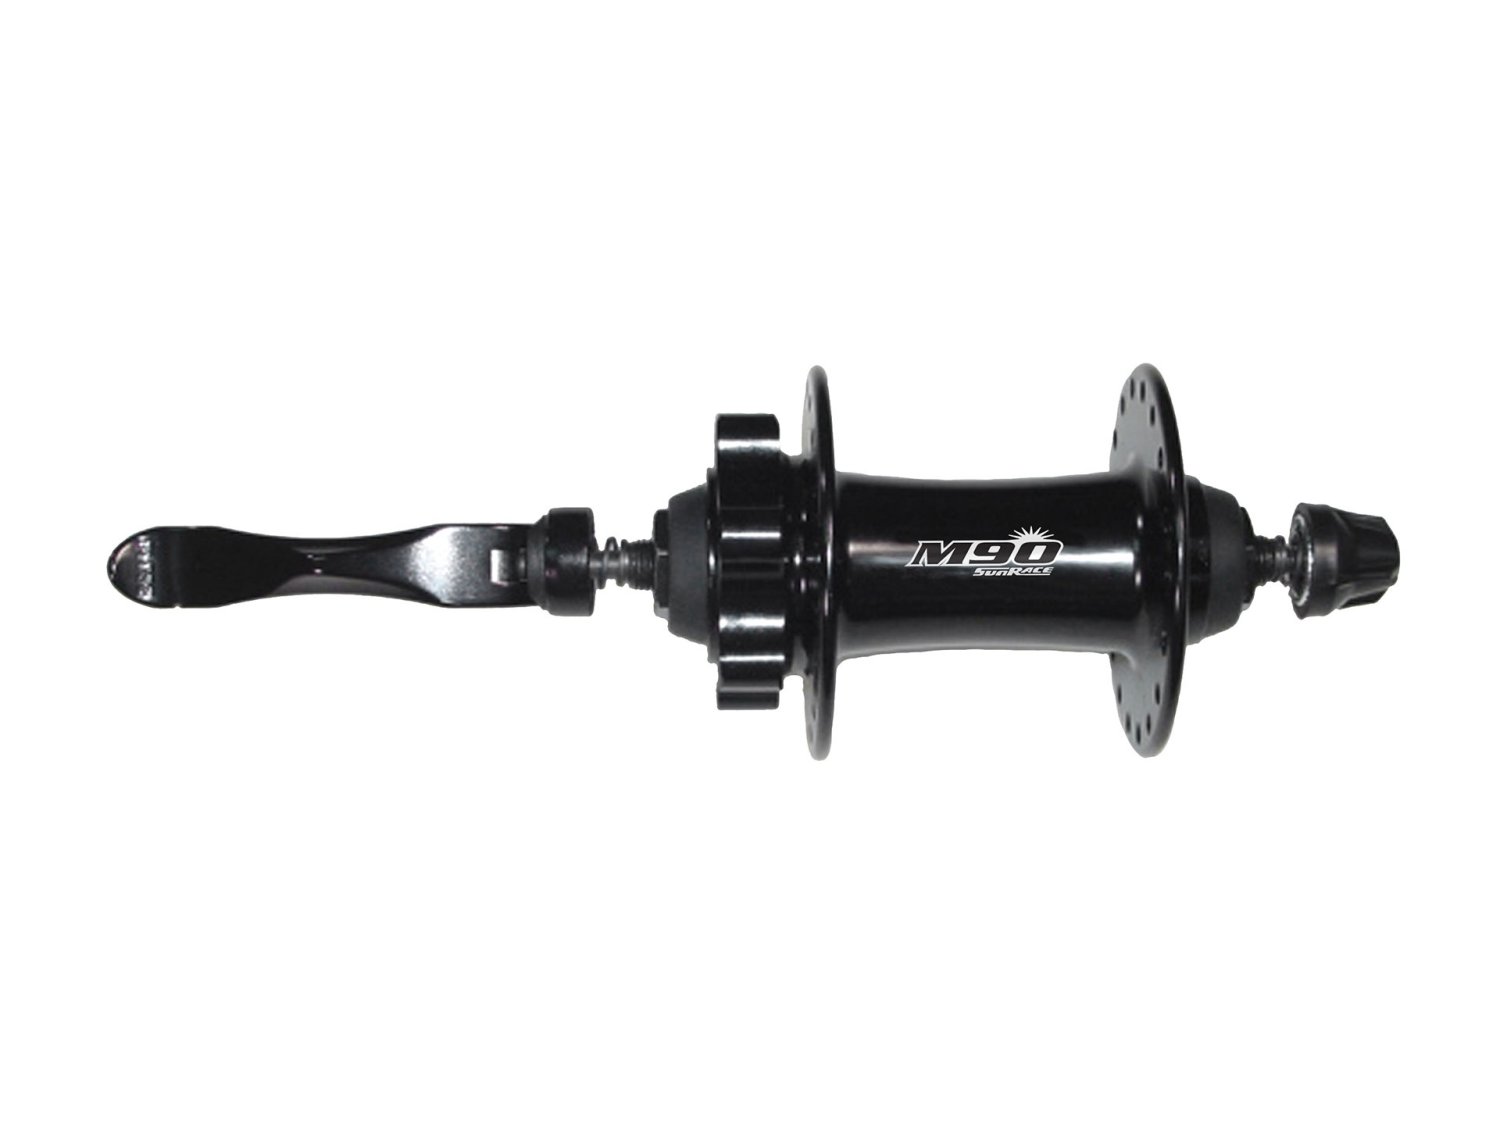 Втулка велосипедная SUNRACE HBM96.F0QS.DS1.BX M96, передняя, с эксцентриком, 32H, под диск, чёрный, 06-201509